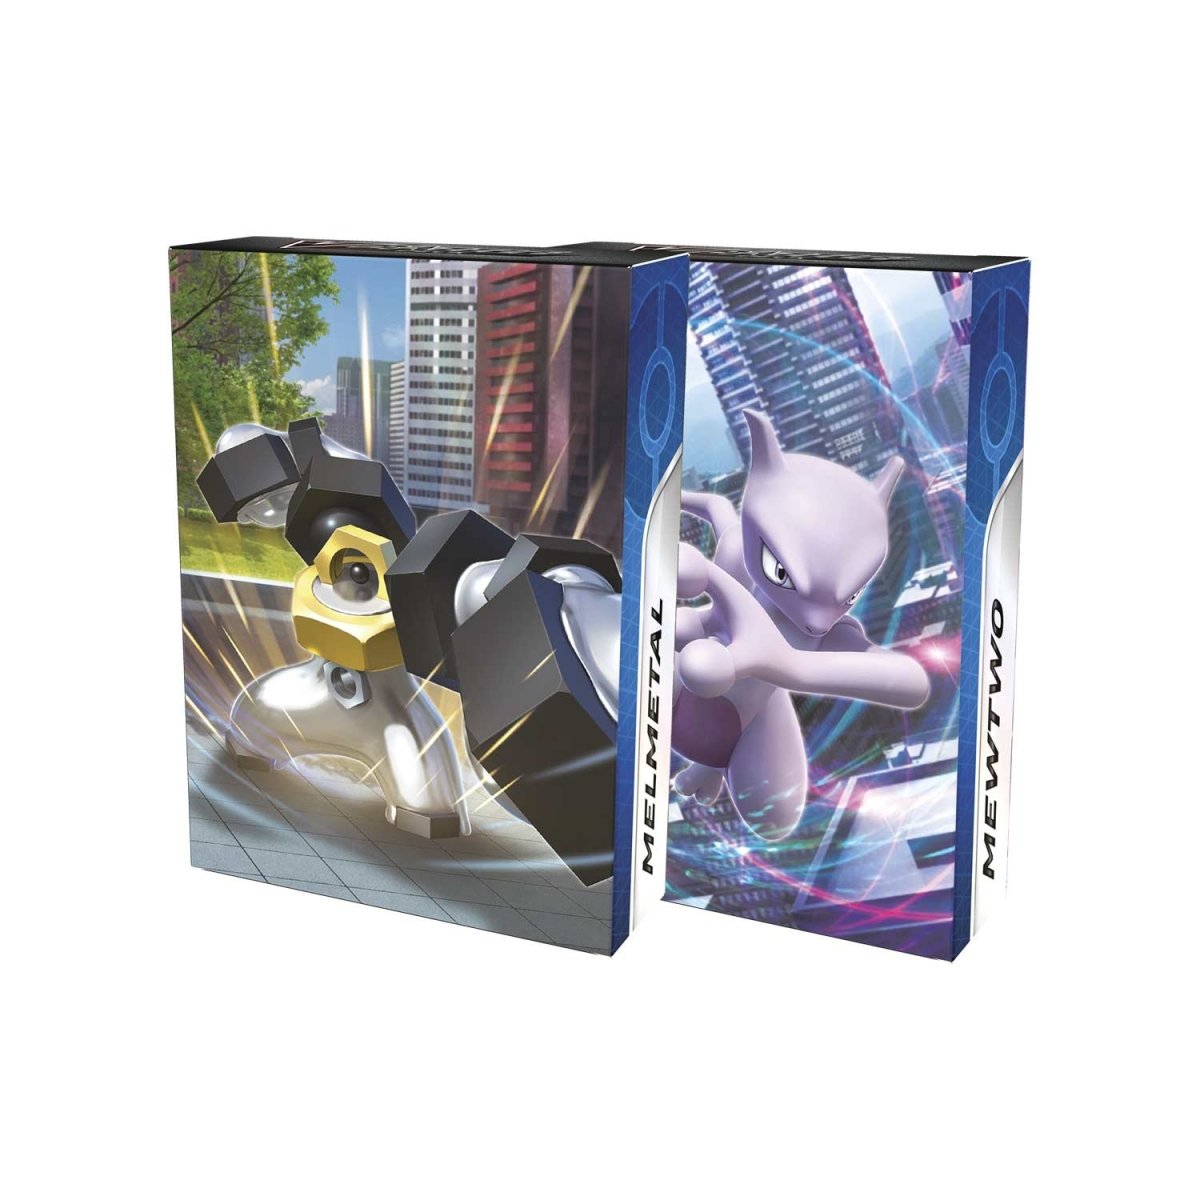 Pokémon TCG: Pokémon GO V Battle Deck (Mewtwo vs. Melmetal